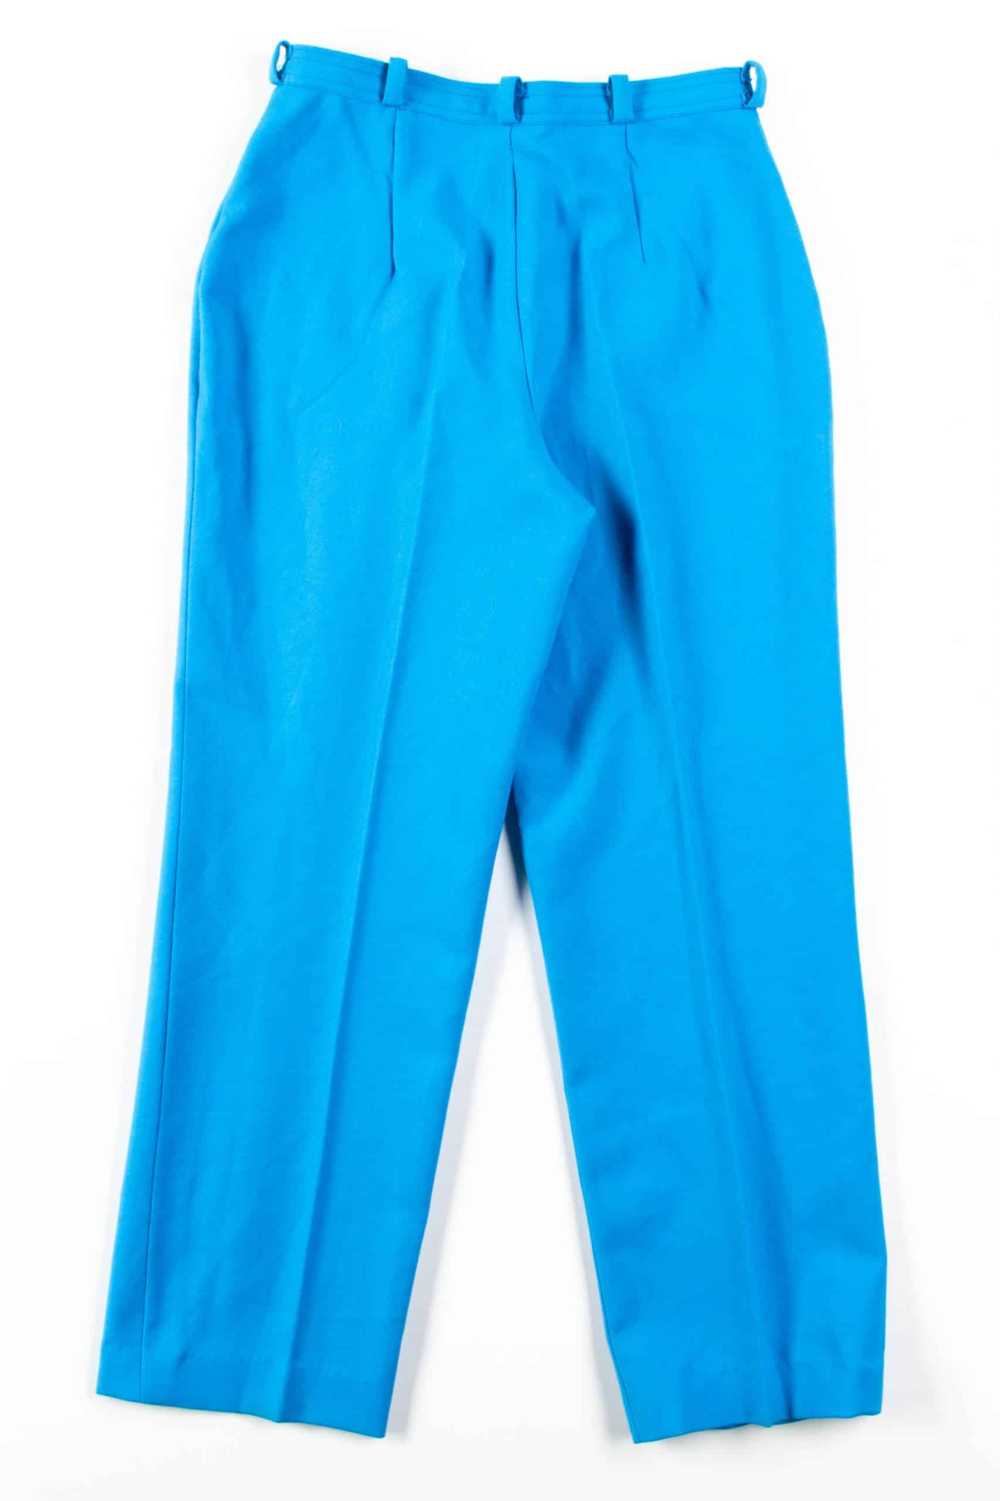 Light Blue Vintage Pants (sz. 14) - image 4